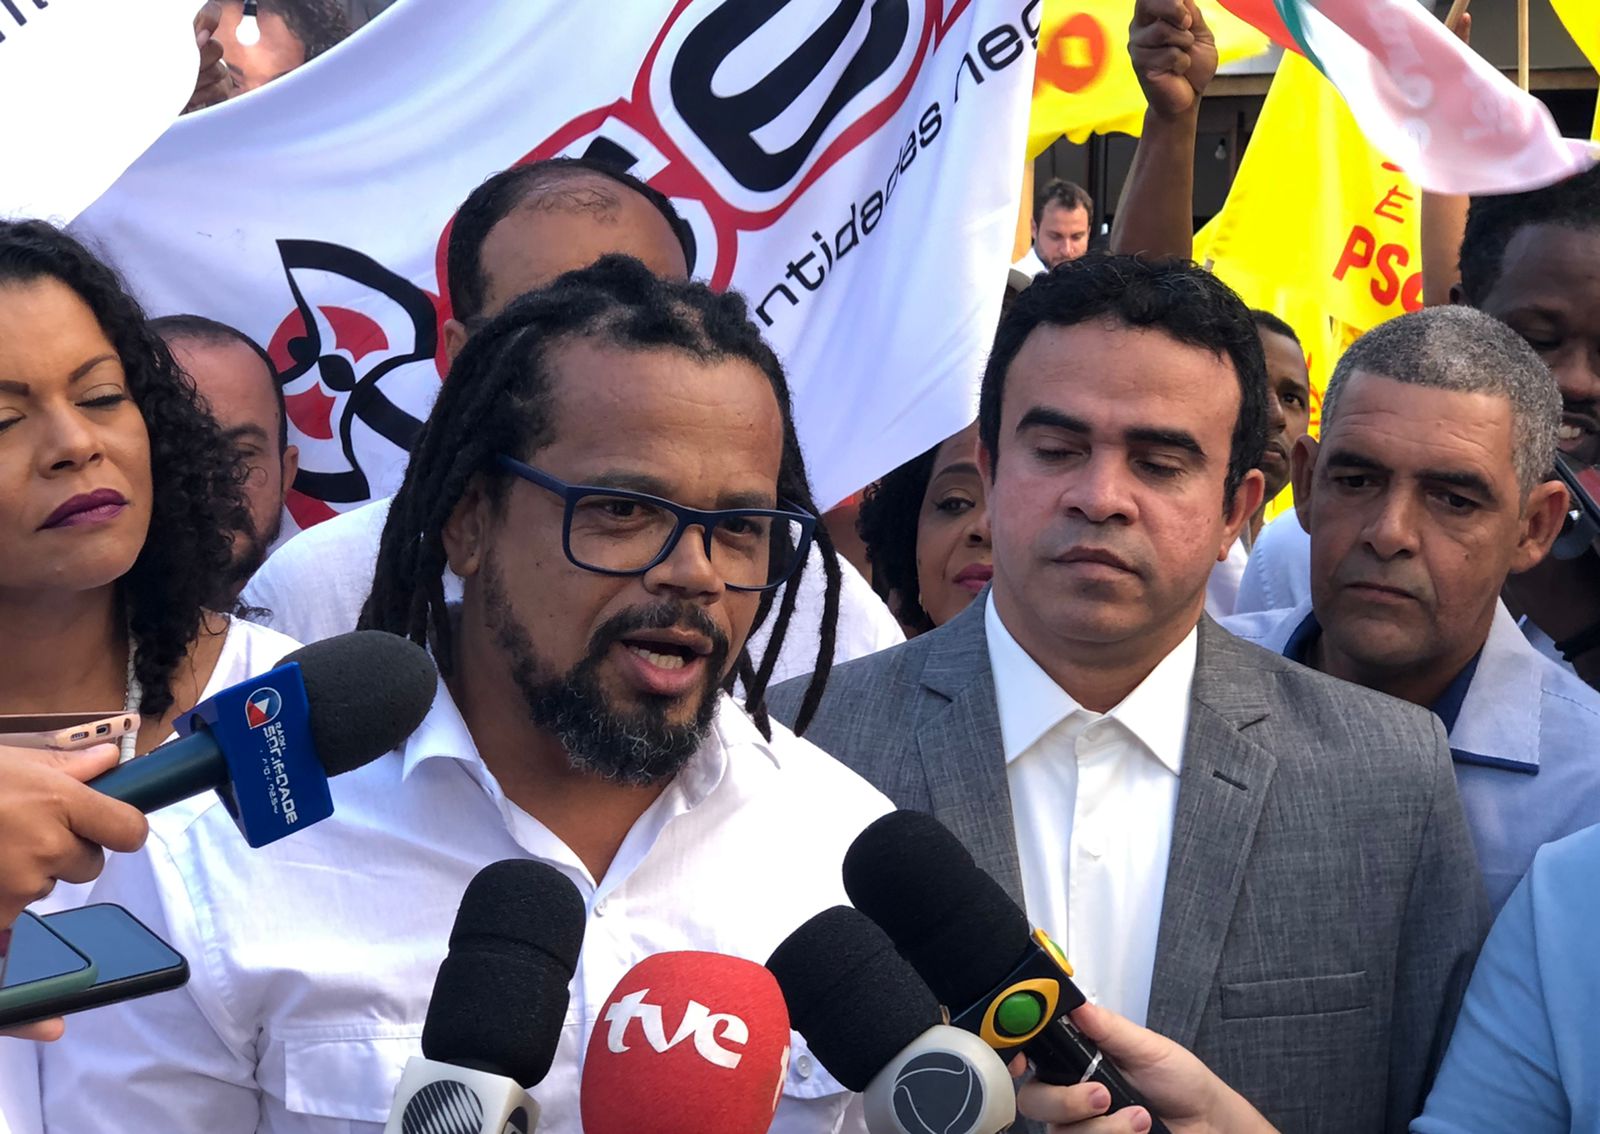 Convenção do PSOL oficializa Kléber Rosa como candidato ao governo da Bahia